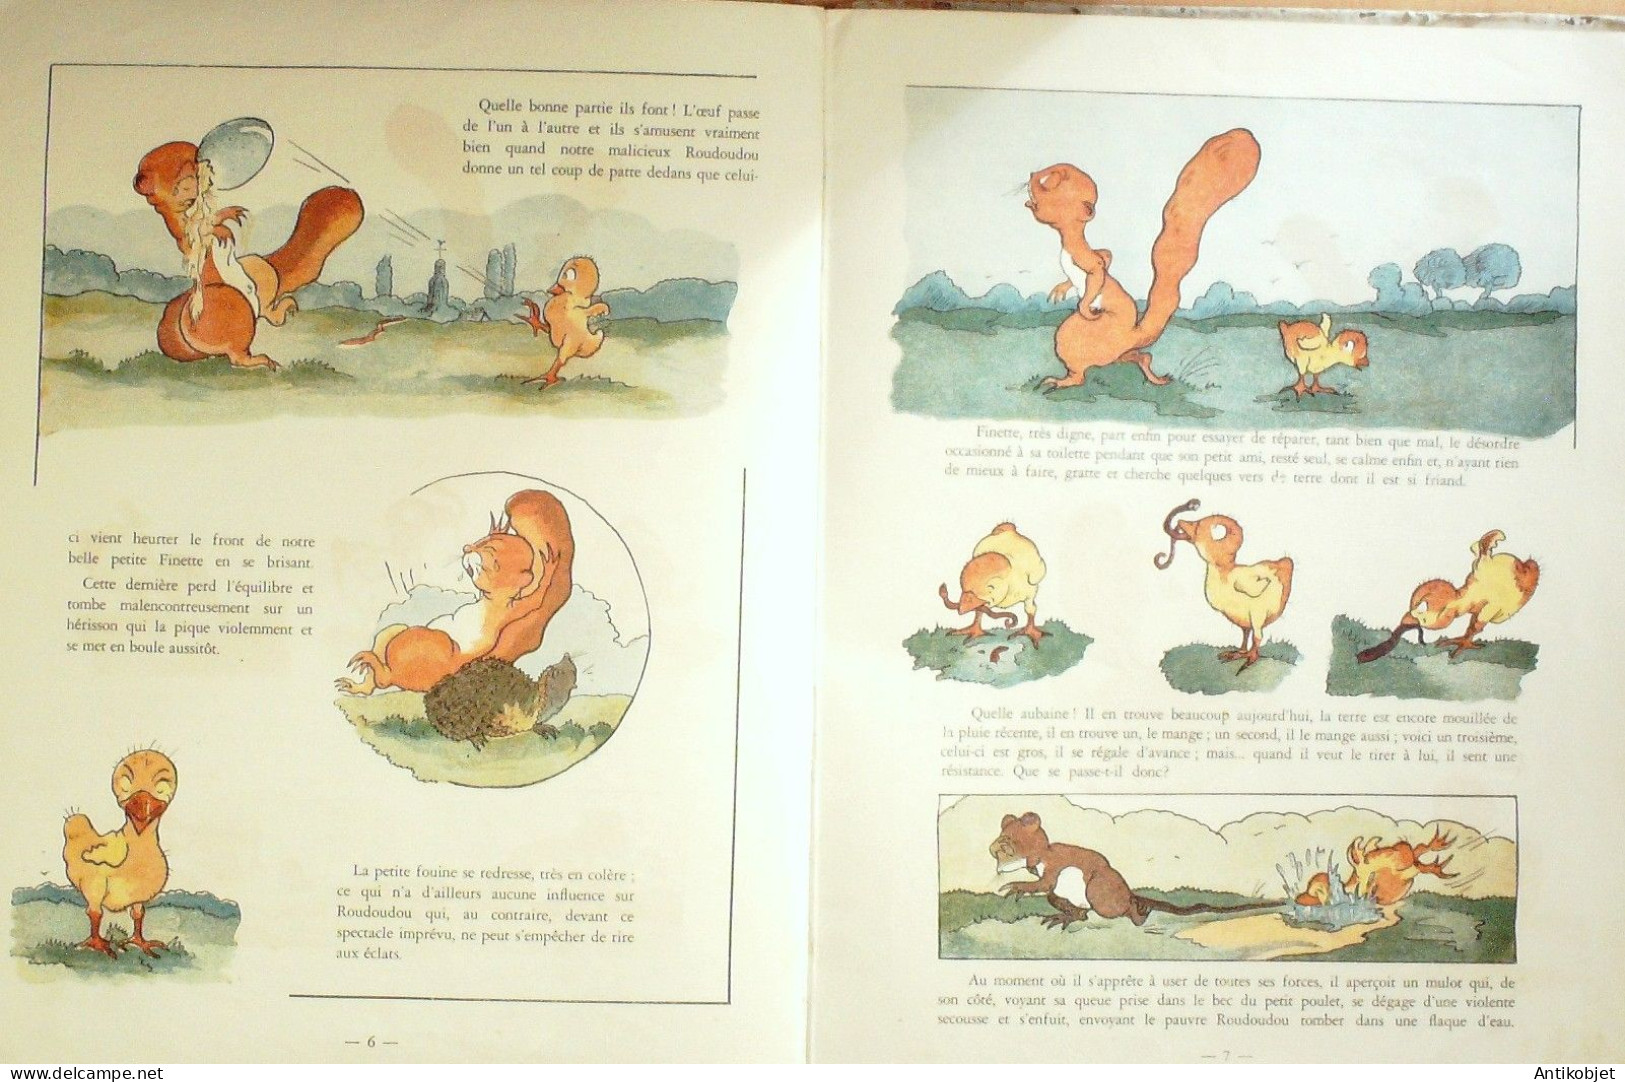 Finette & Roudoudou & Son éducation Illustrateur Parent Maurice Eo 1947 - 5. Guerras Mundiales